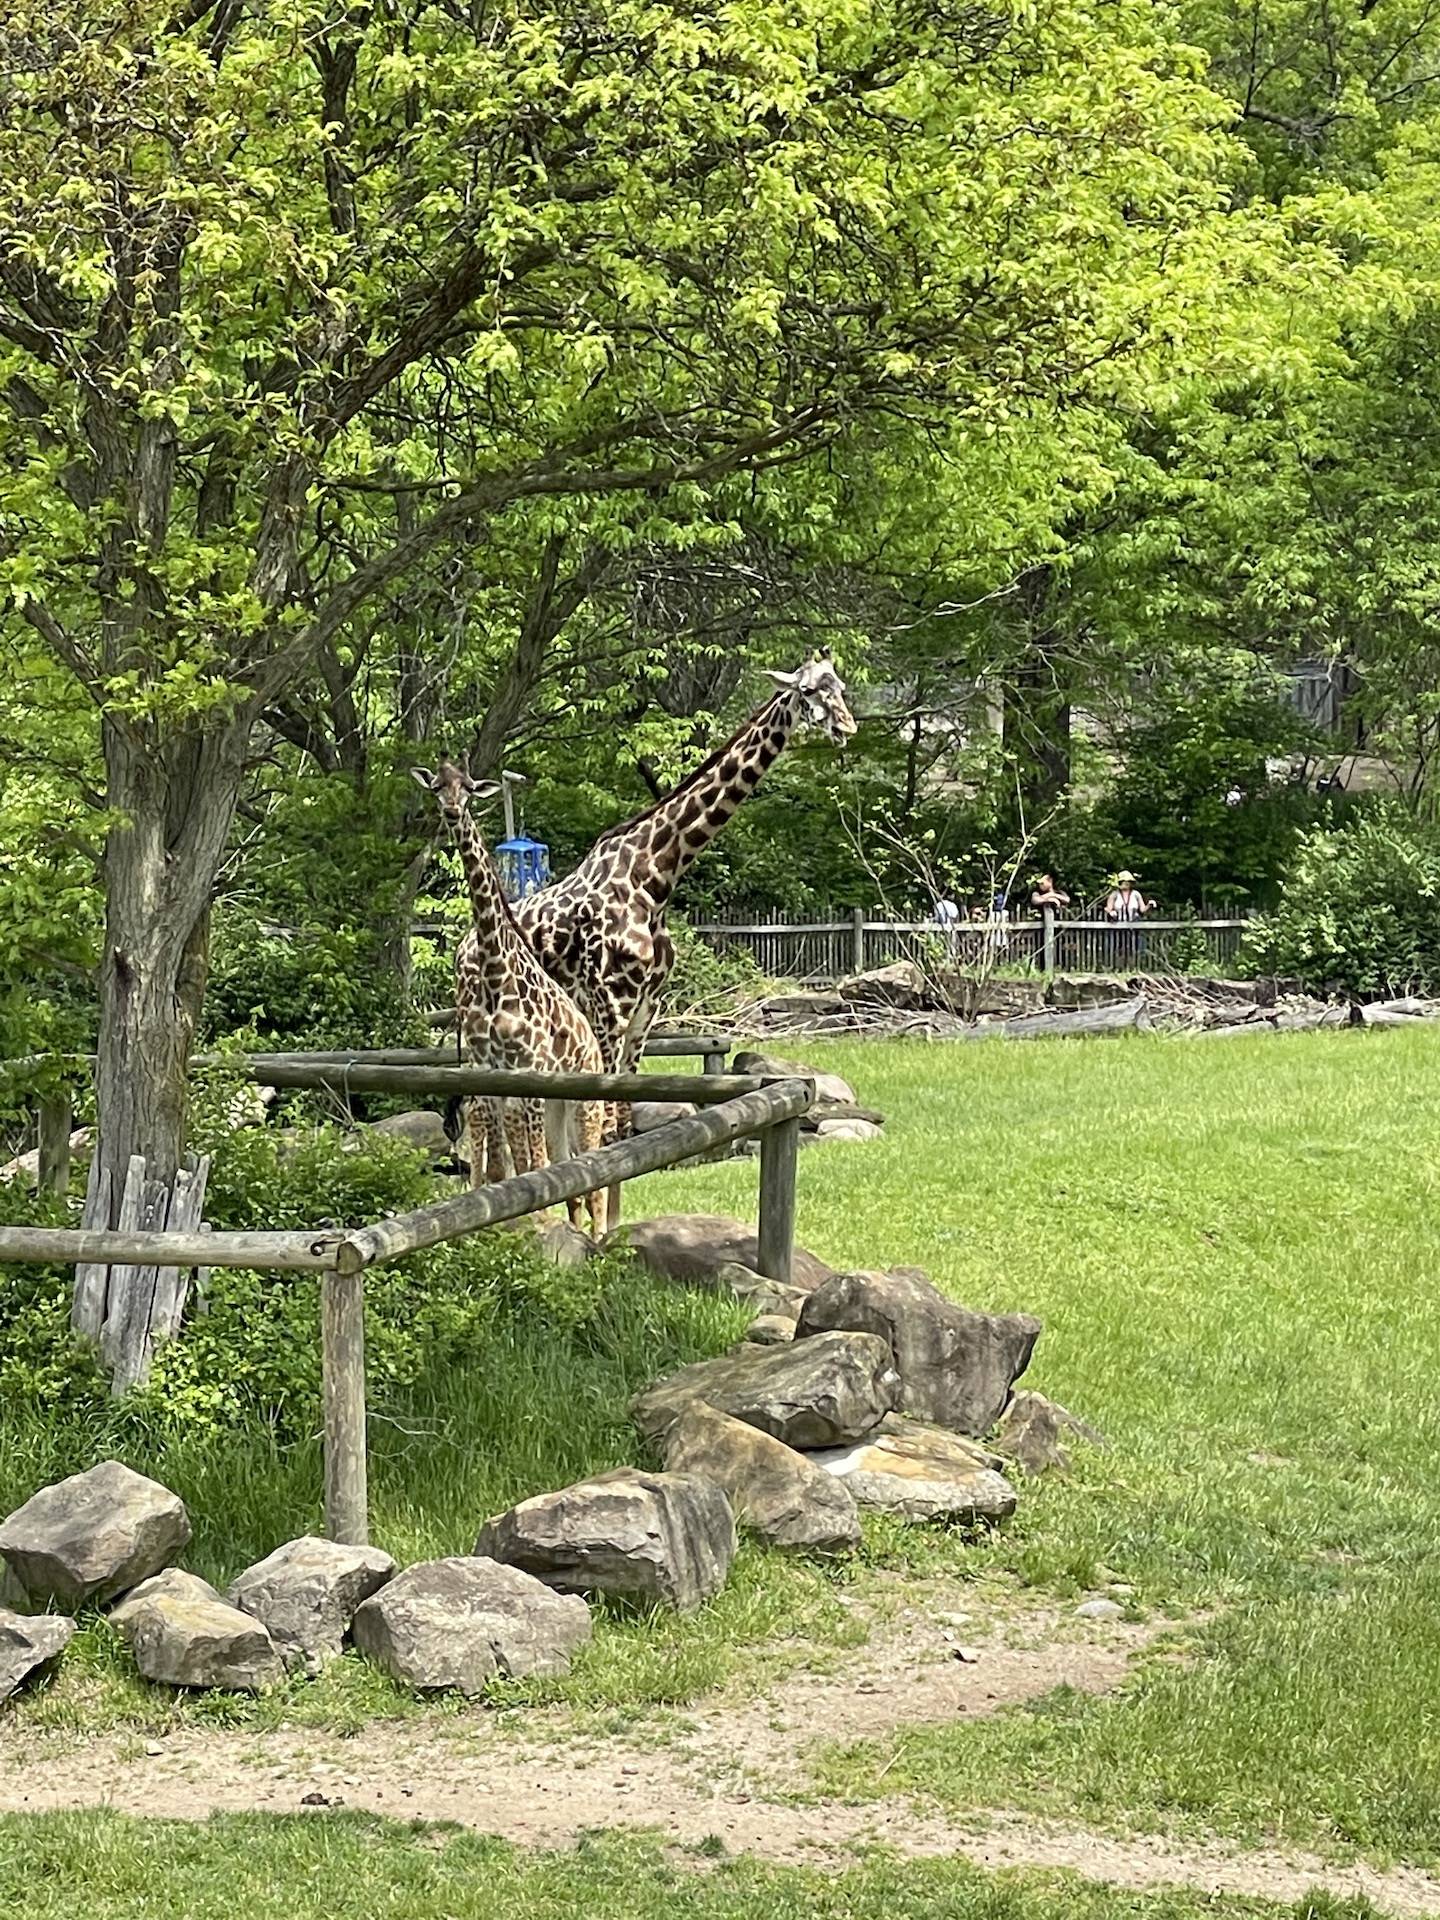 zoo field trip giraffes in the field